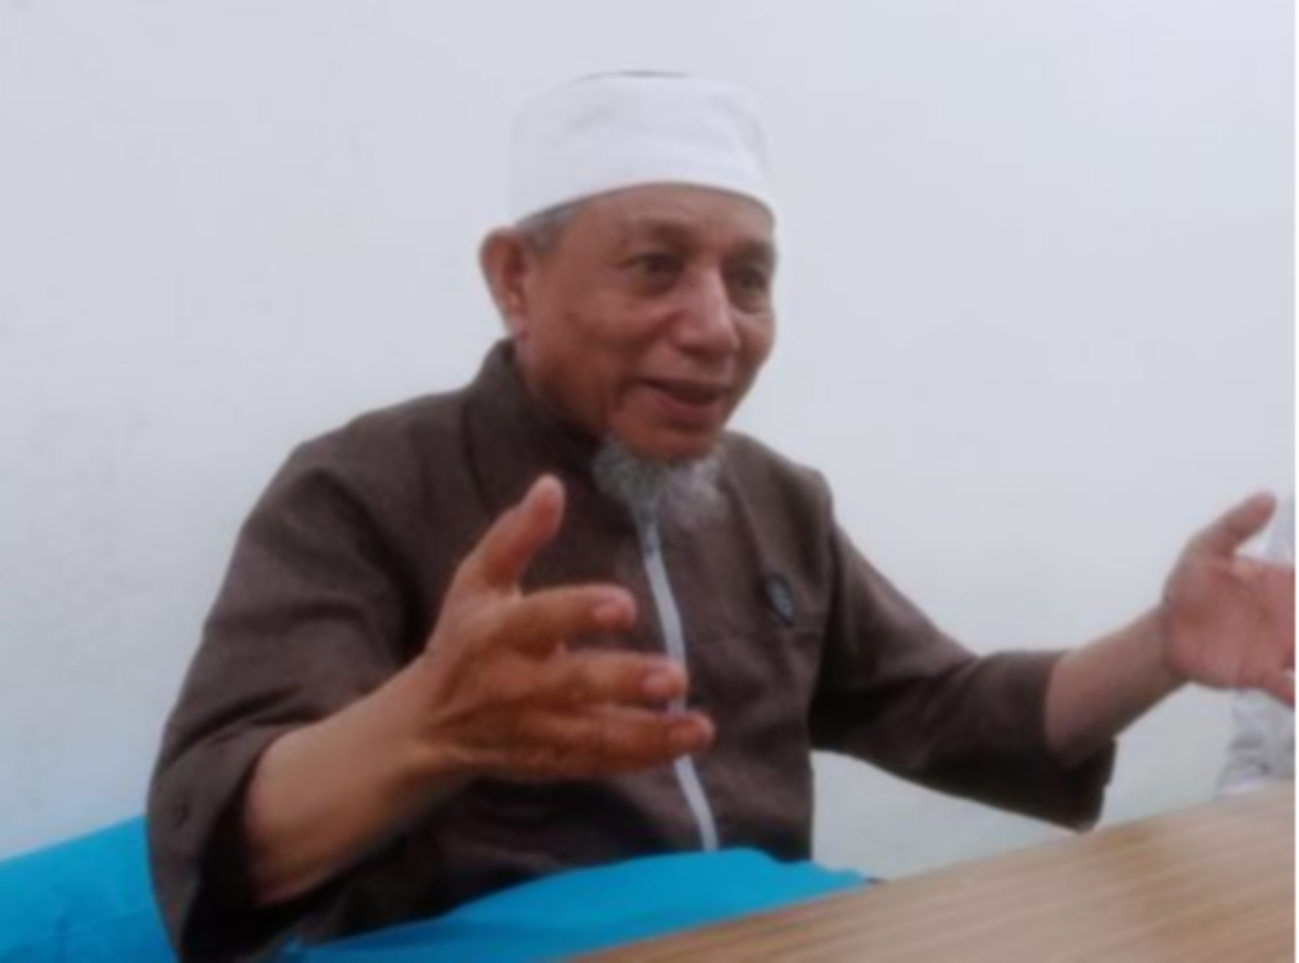 Pemimpin tertinggi Khilafatul Muslimin, Abdul Qadir Baraja ditangkap di Lampung, Selasa 7 Juni 2022. (Foto: Istimewa)